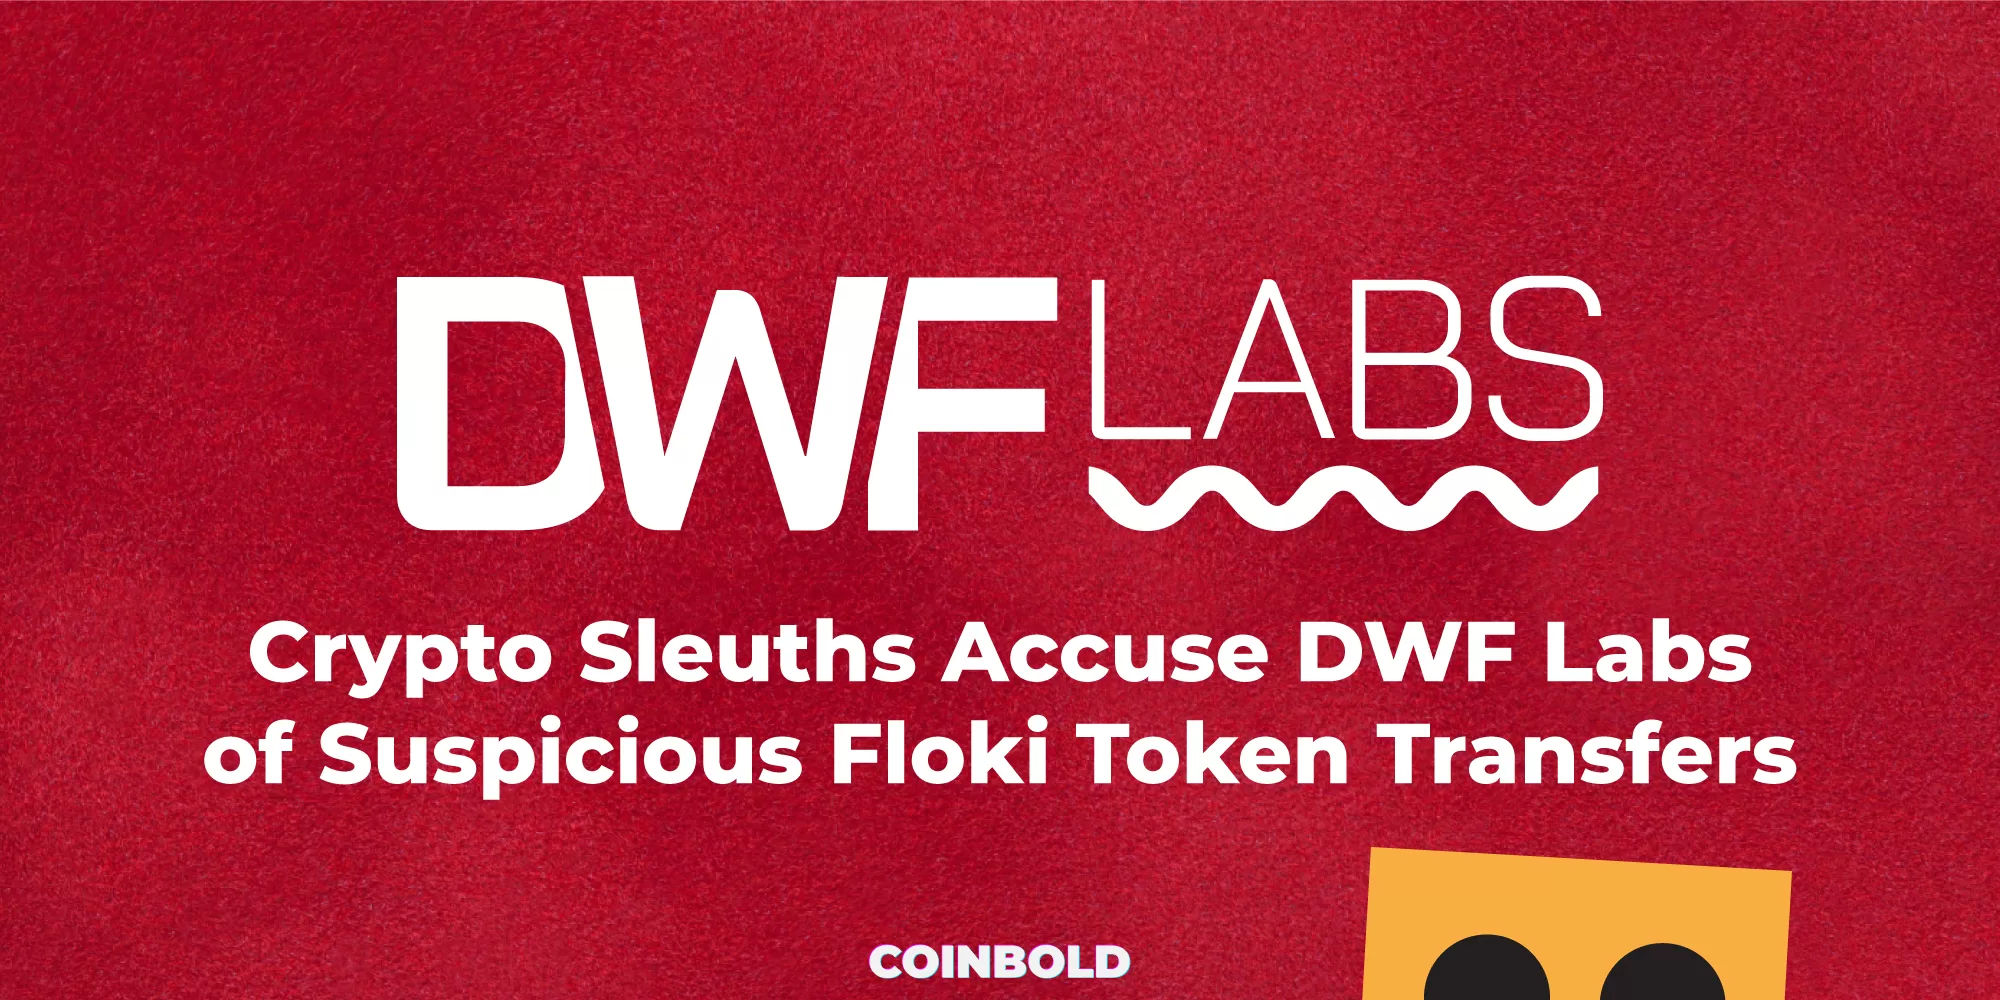 Crypto Sleuths Accuse DWF Labs of Suspicious Floki Token Transfers